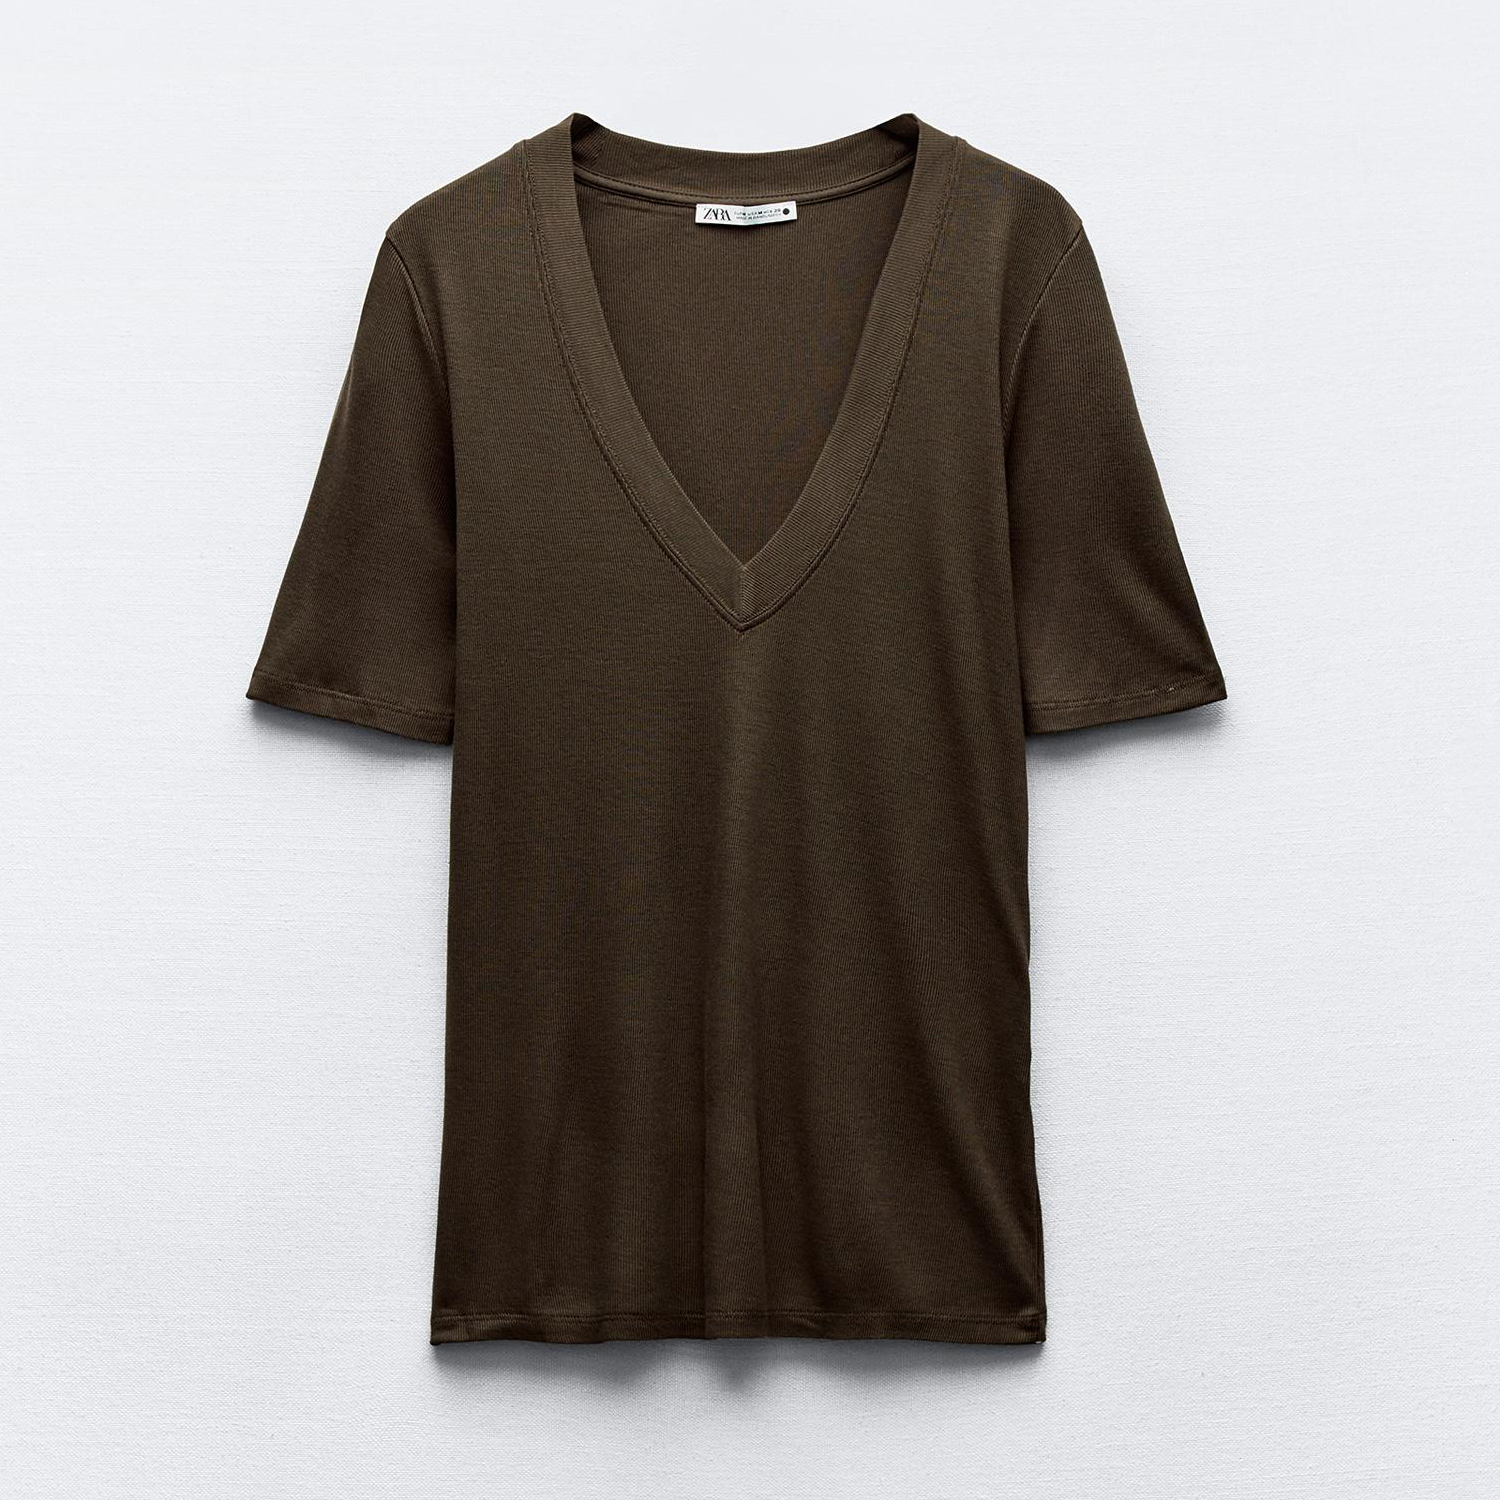 Футболка Zara Flowing V-Neck, коричневый футболка zara flowing v neck хаки